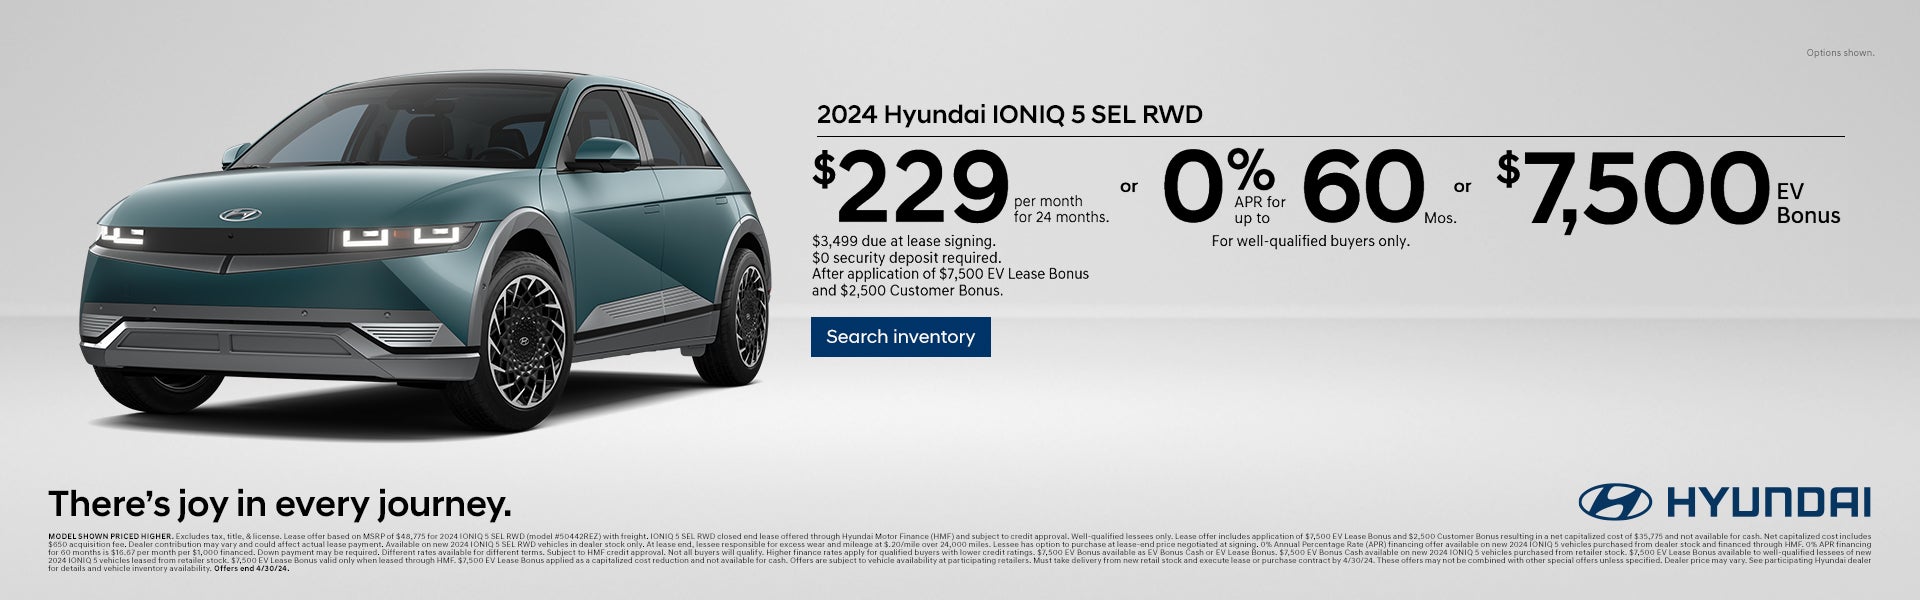 Hyundai IONIQ 5 offer 